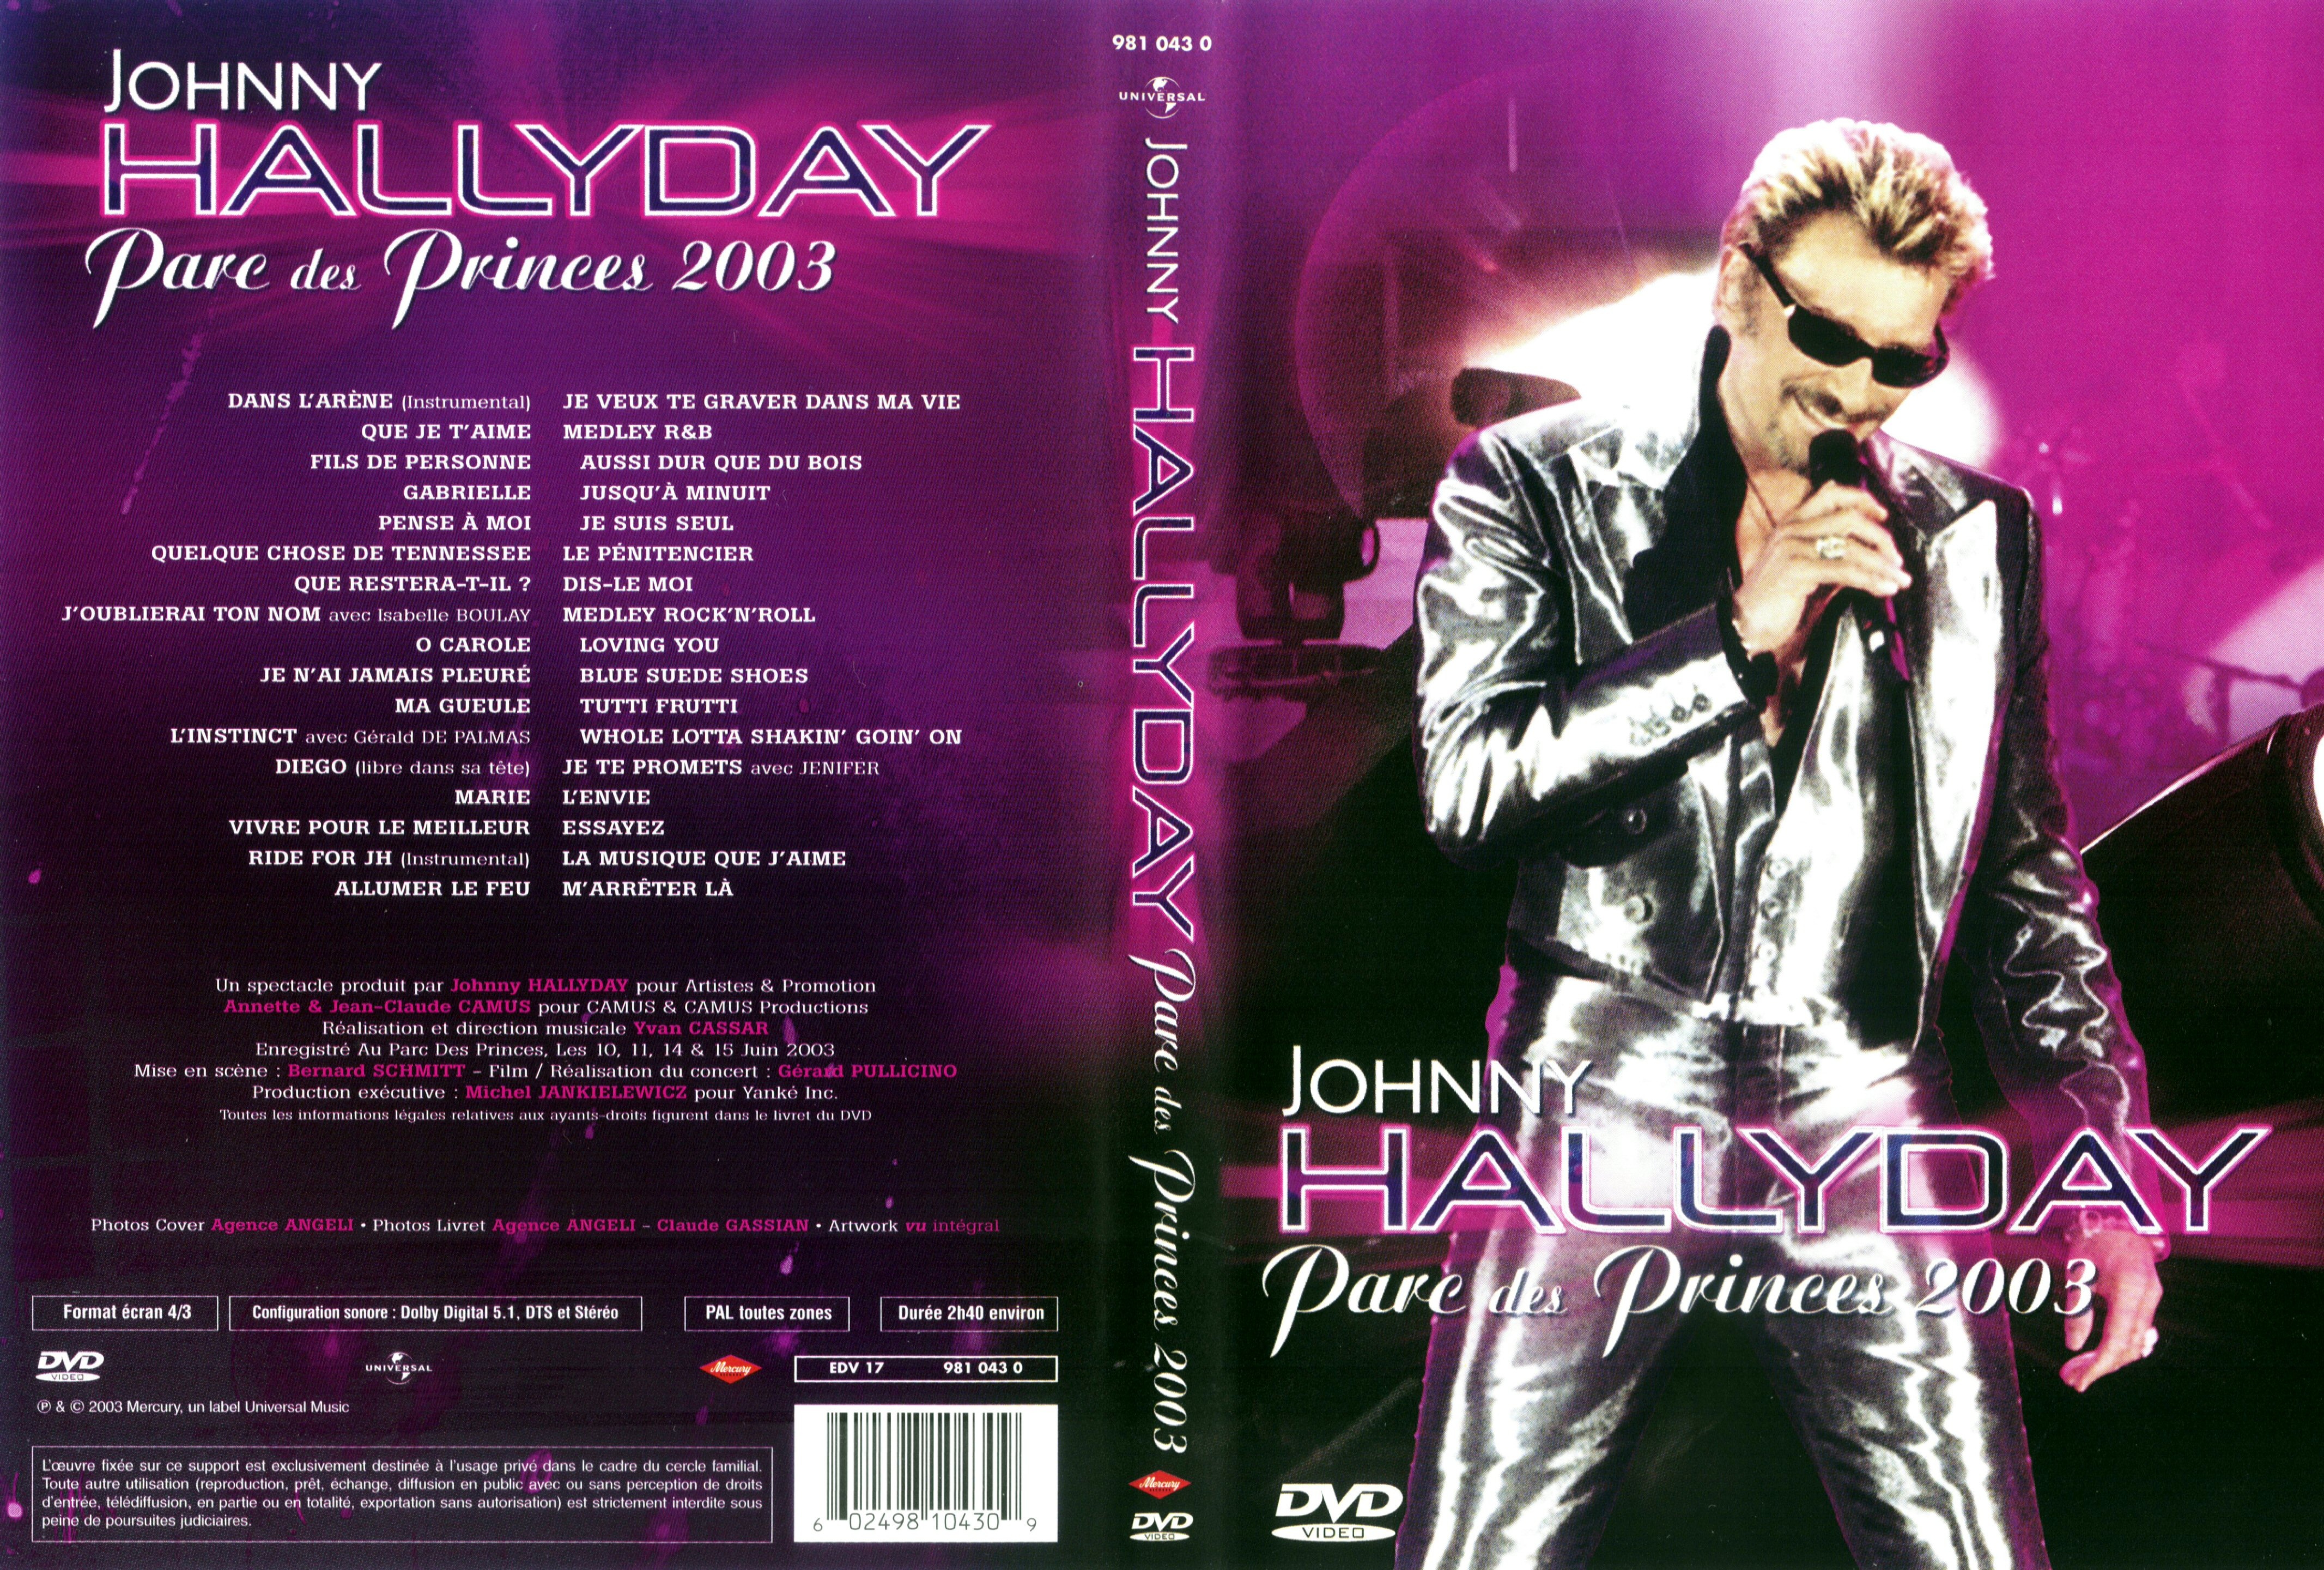 Jaquette DVD Johnny Hallyday Parc des Princes 2003